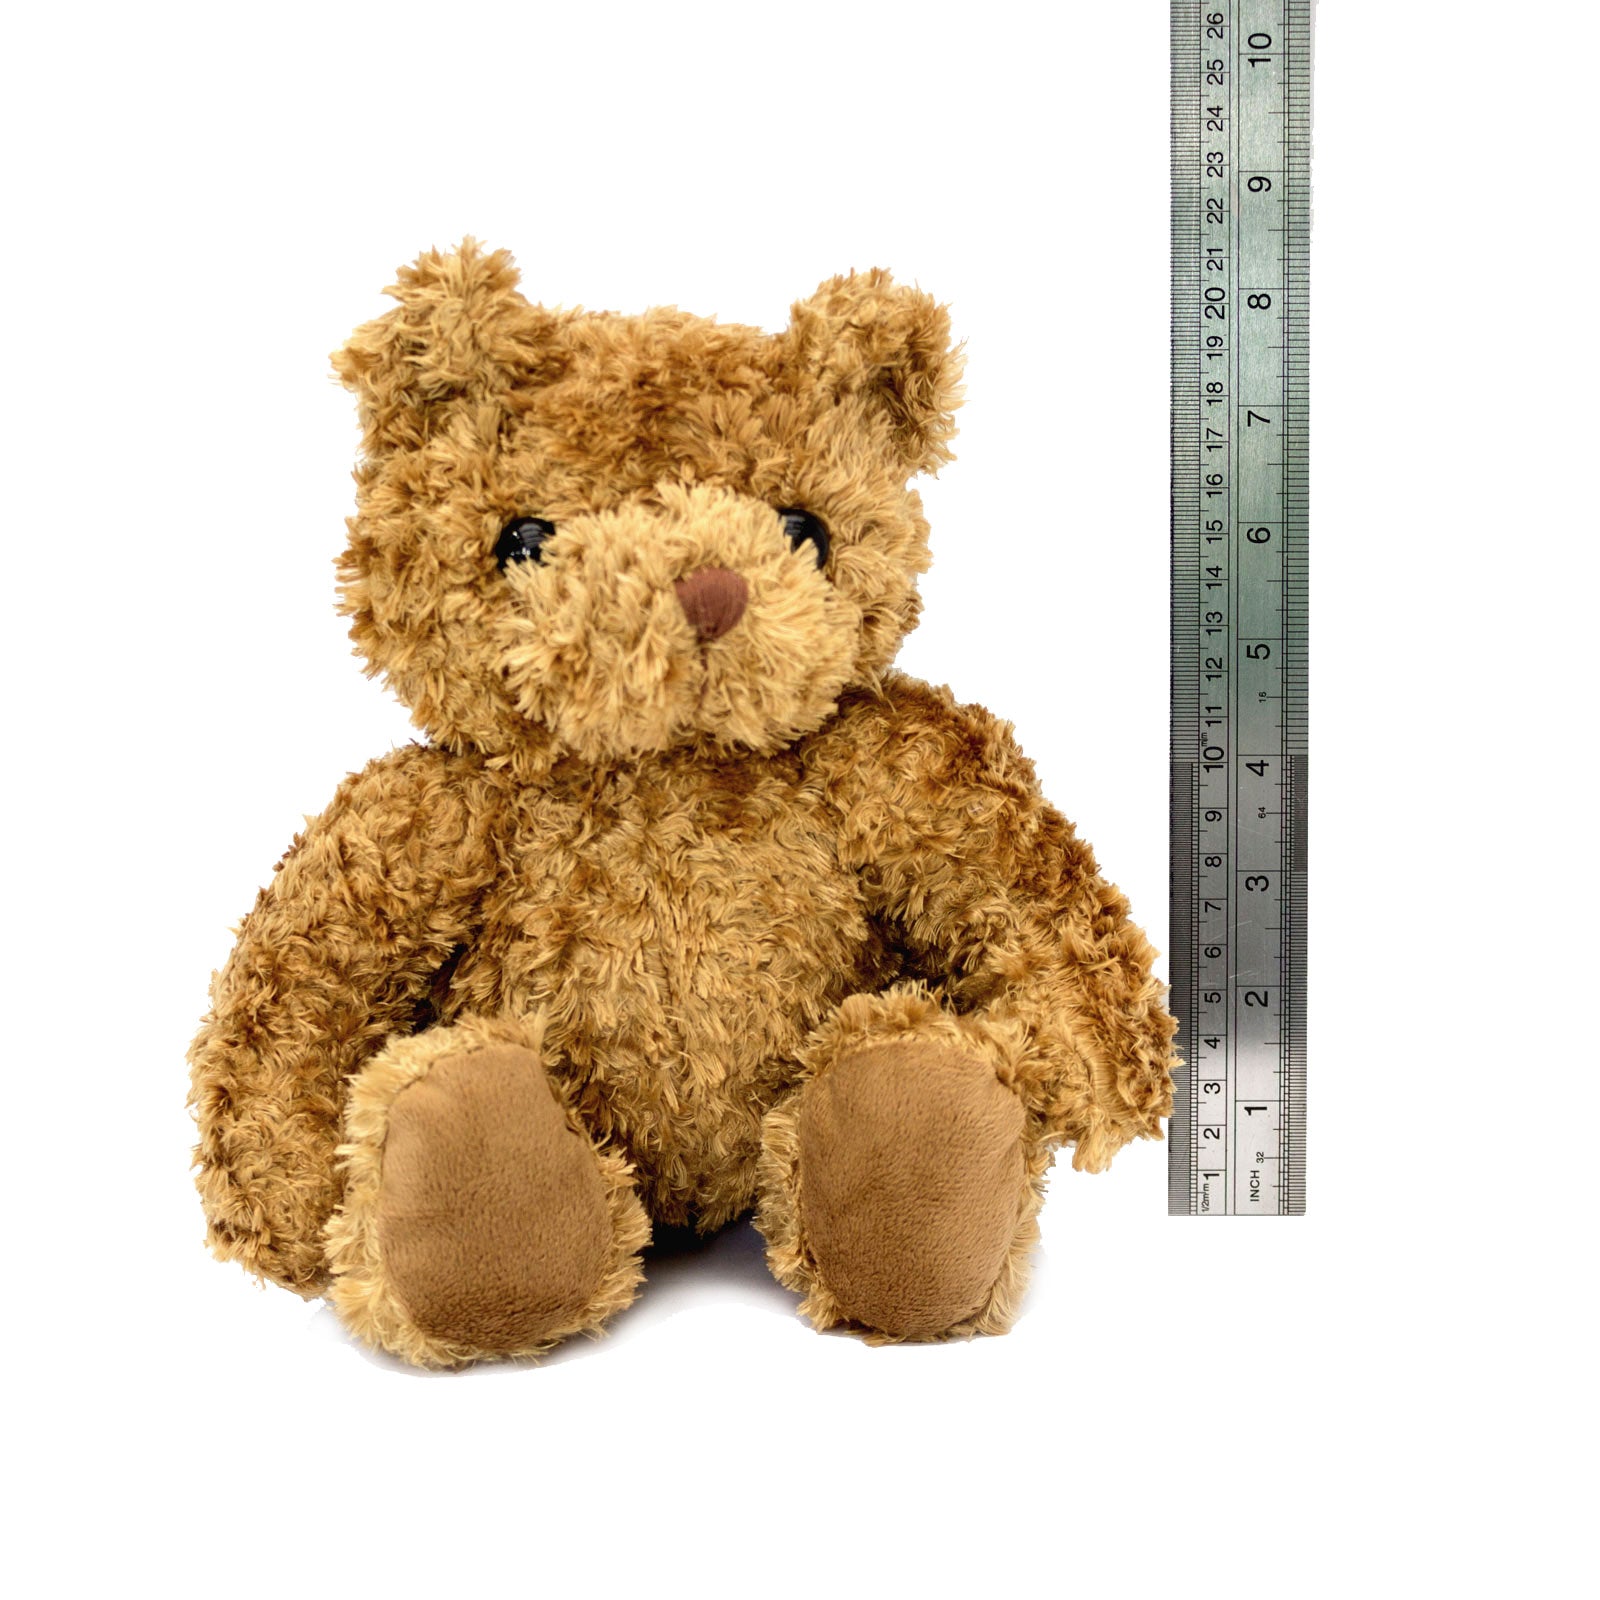 Get Well Soon Florian - Teddy Bear